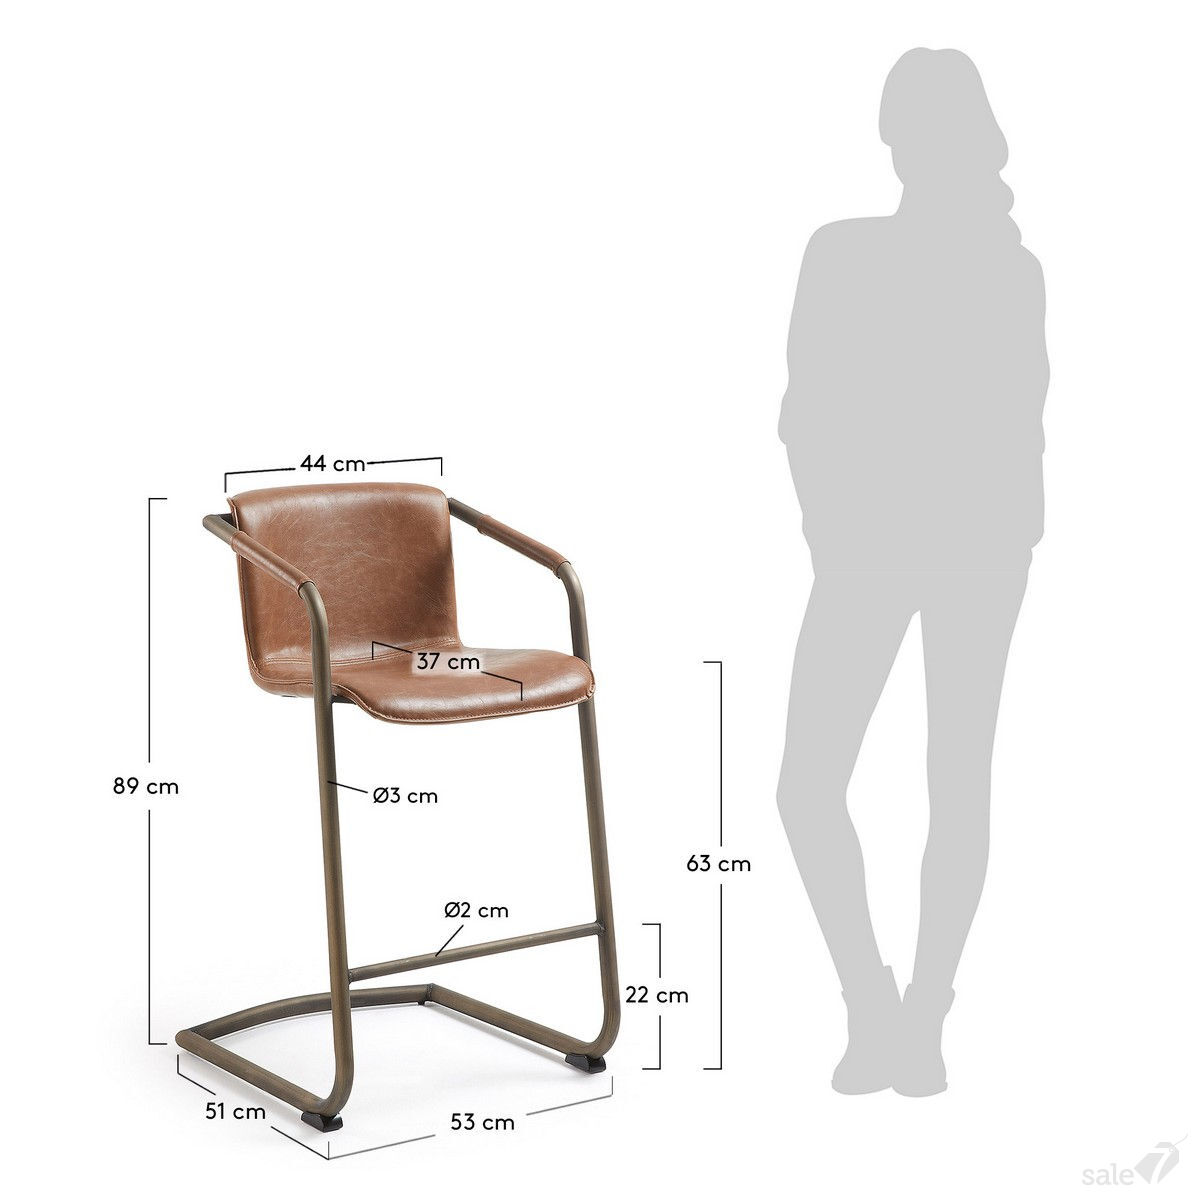 Высота полубарного стула стандарт